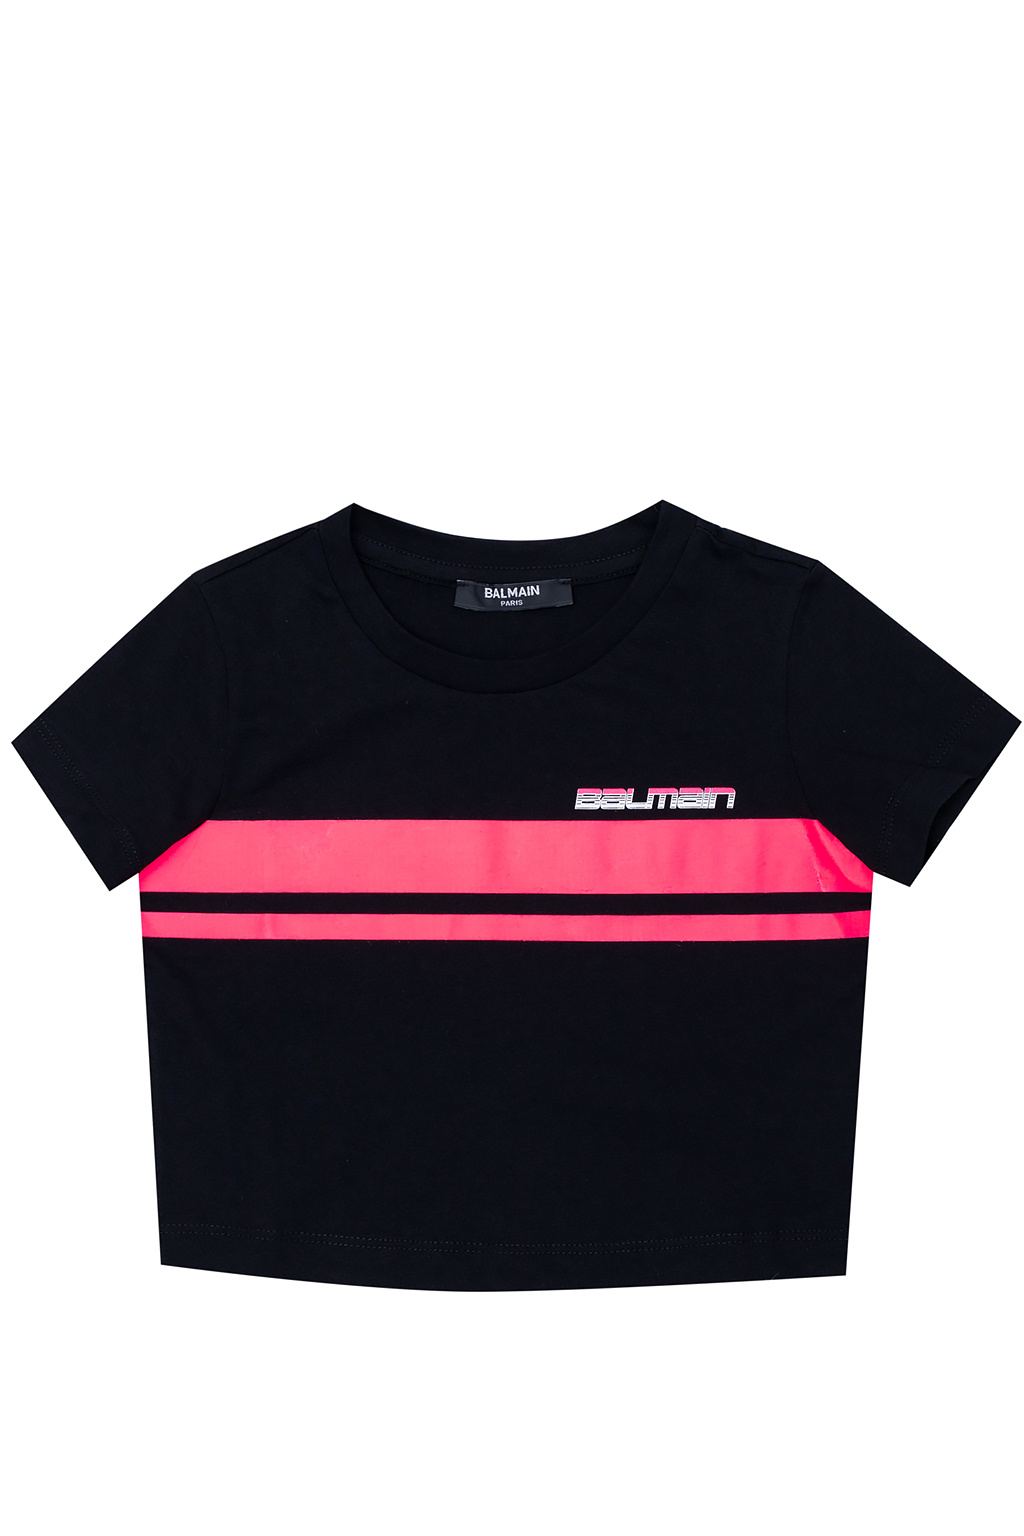 Balmain Kids logo-print short-sleeve T-shirt - Black